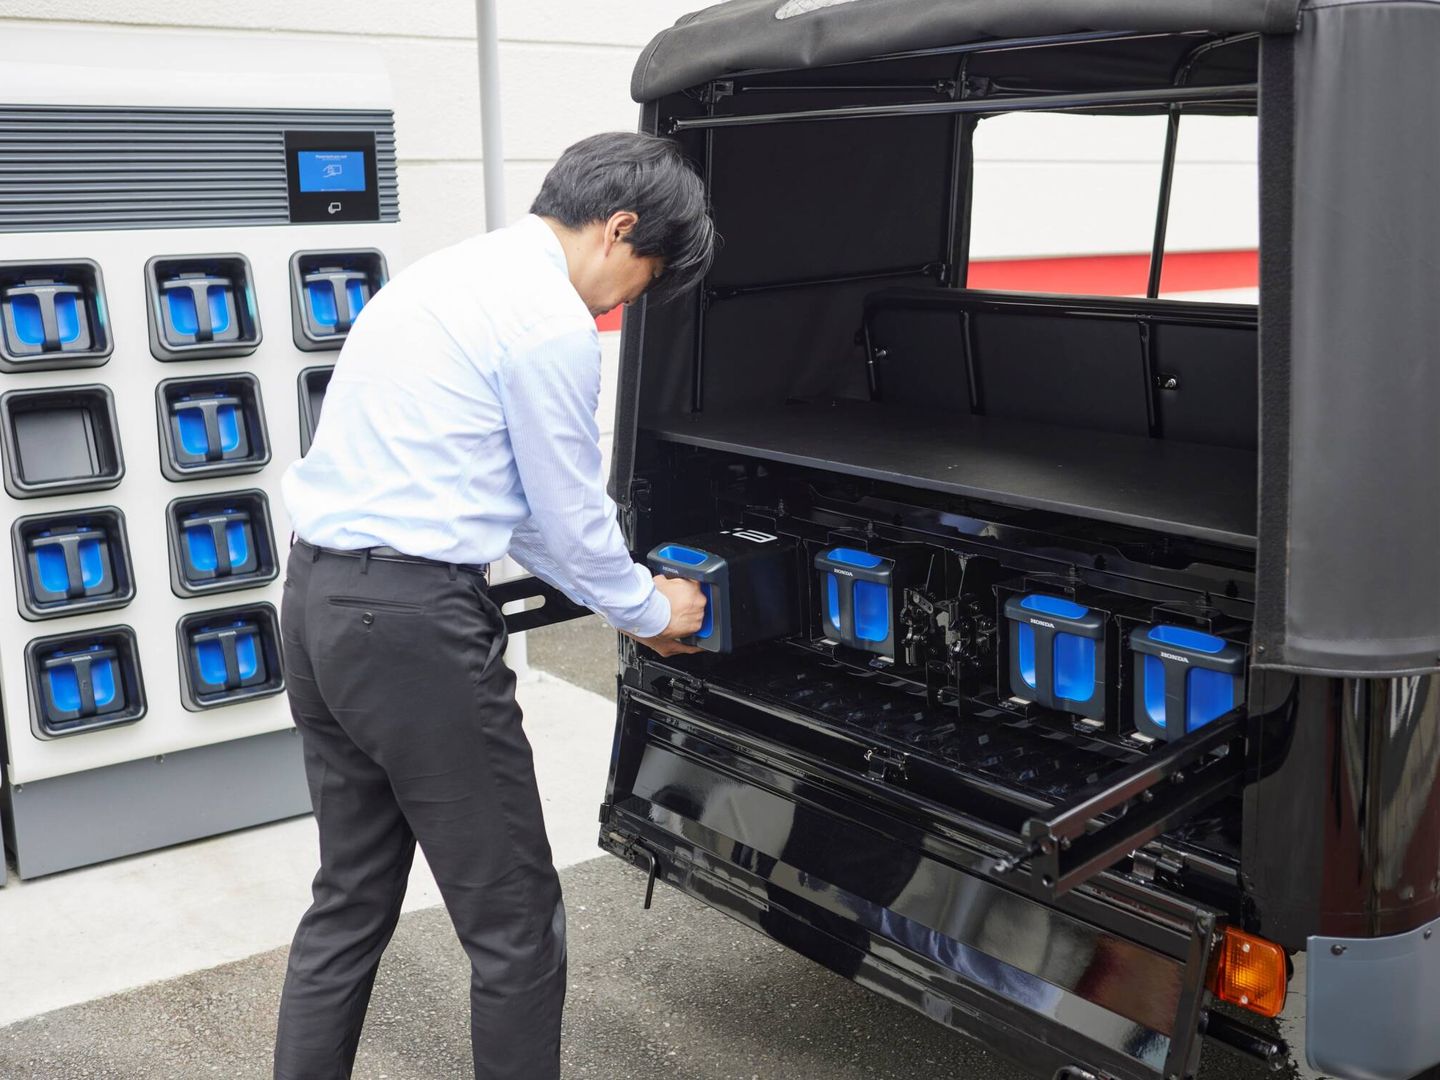 Cada sistema acumulador de Honda pesa 10,3 kilos y tiene una capacidad superior a 1,3 kWh. Las pruebas realizadas en India desde febrero han demostrado que el proyecto es viable.